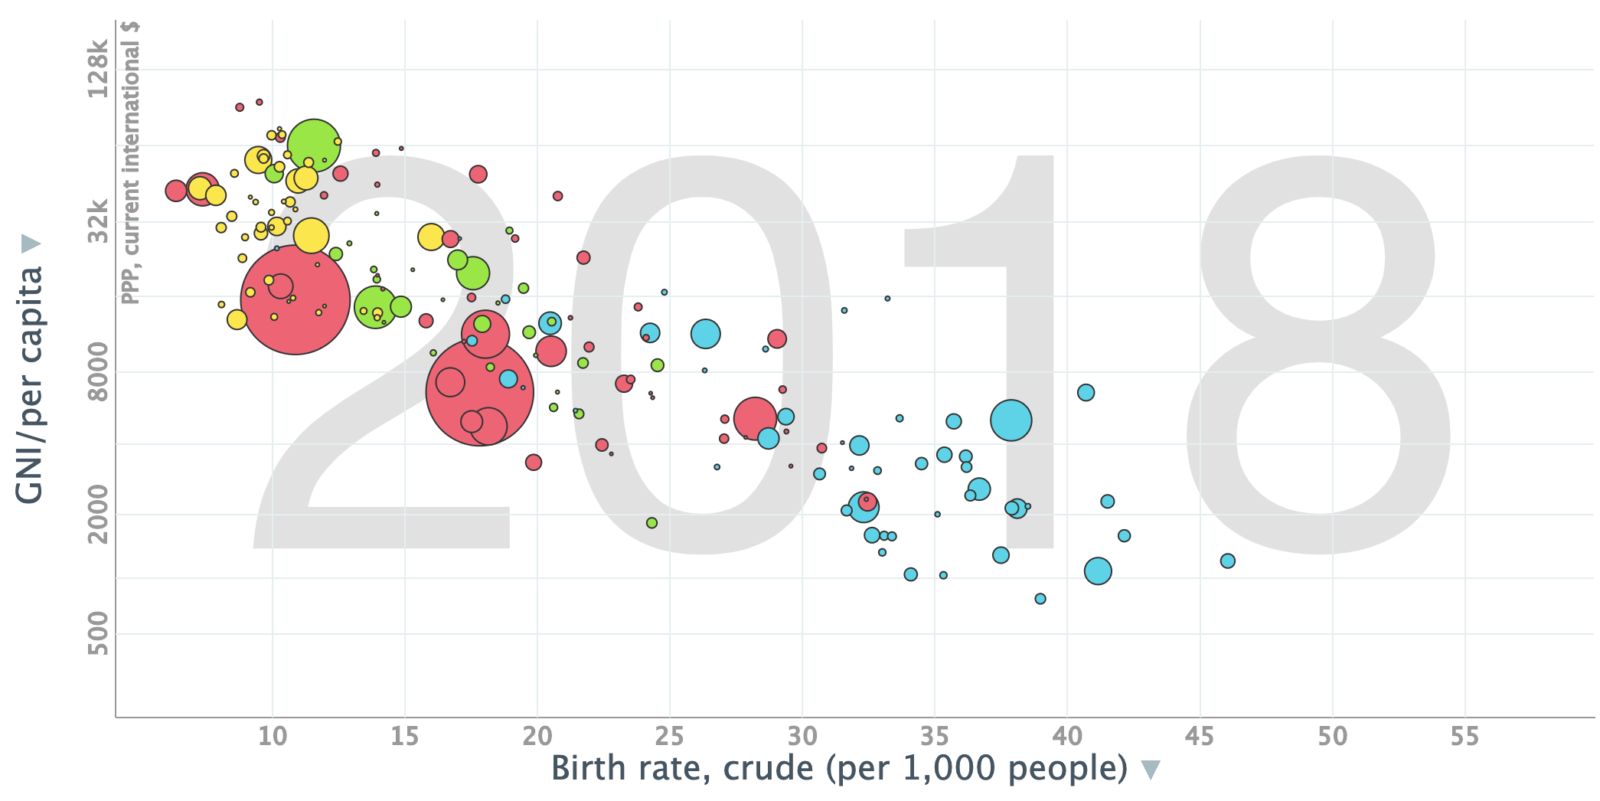 GNI vs Crude Birth Rate